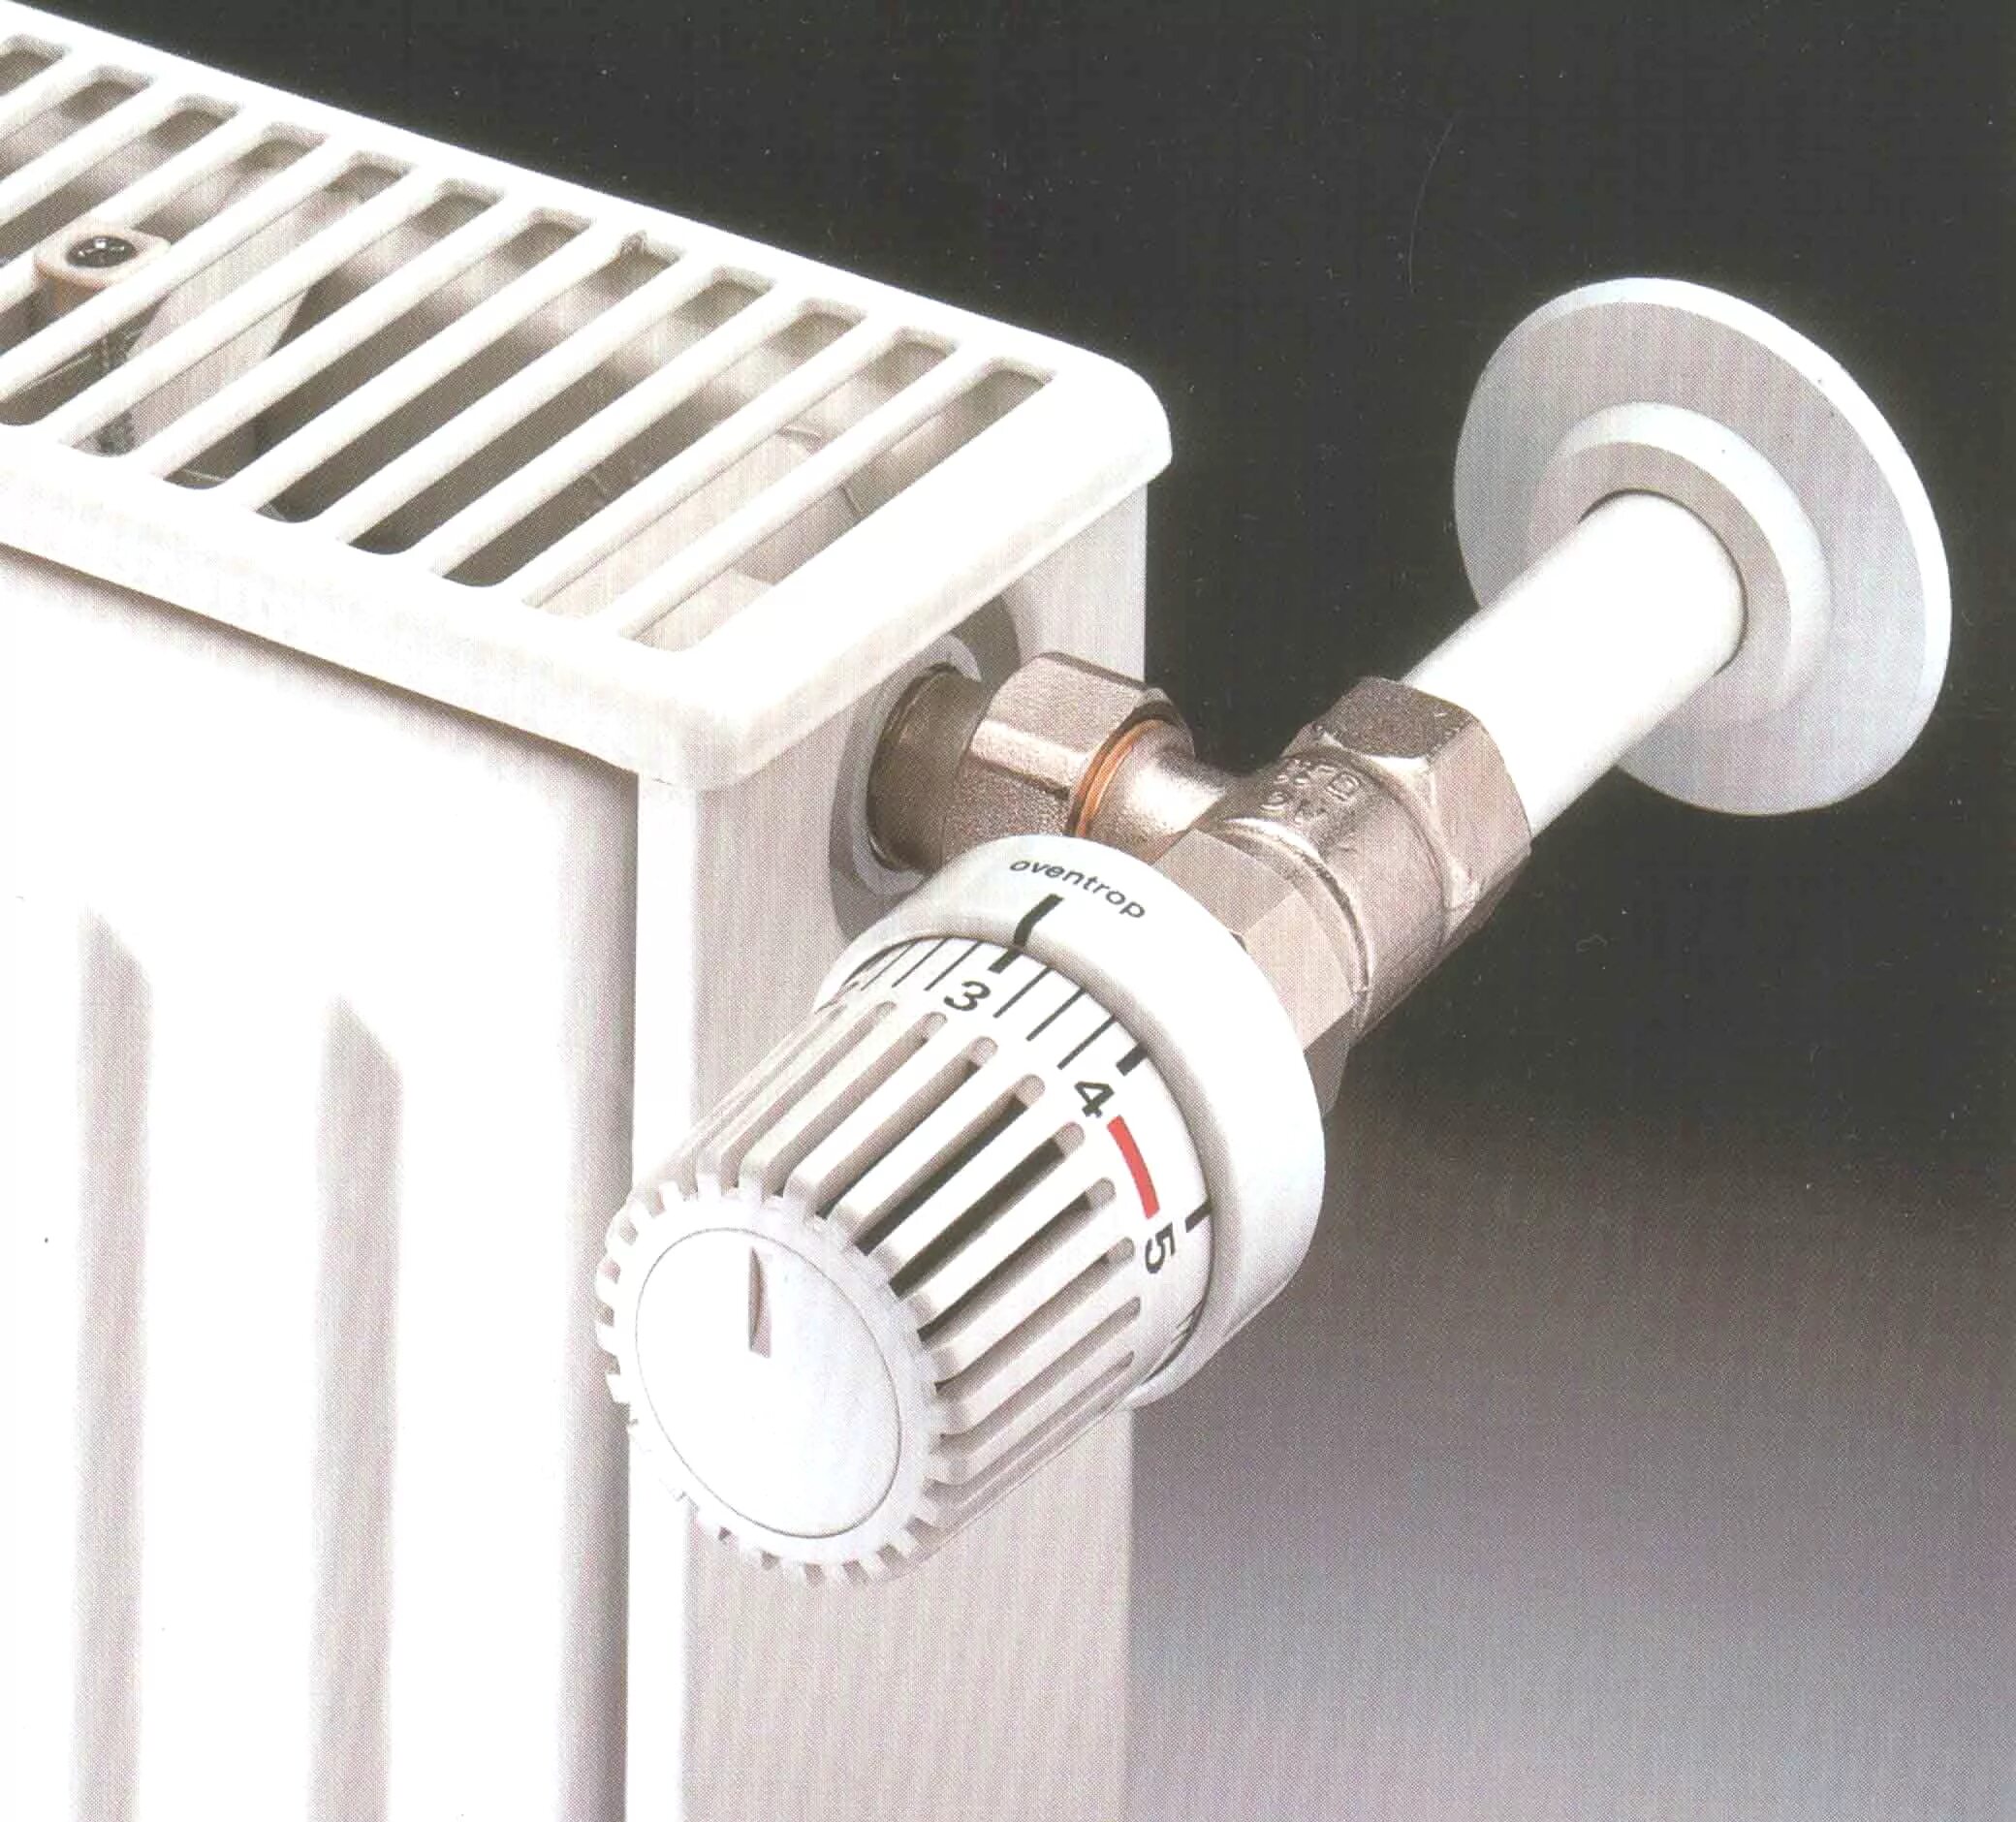 Регулятор тепла для батарей отопления Danfoss. Vrt регулятор радиатора отопления. Терморегулятор осевой для радиатора отопления. Терморегулятор радиаторный ∅20. Тепловые радиаторы отопления